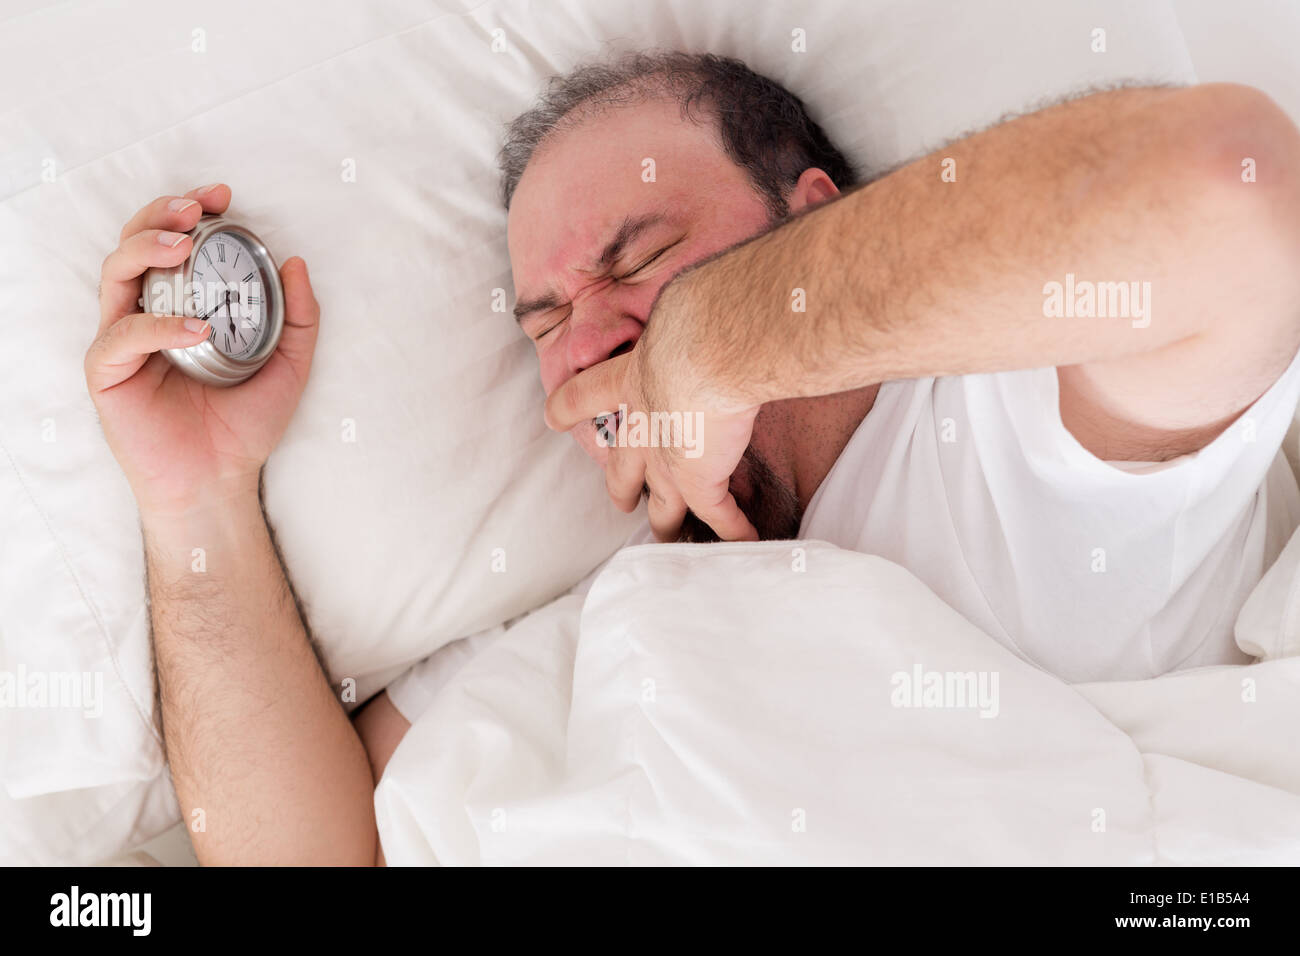 Hombre tumbado en la cama el bostezo como él intenta despertar con su reloj de alarma en su mano embragada Foto de stock